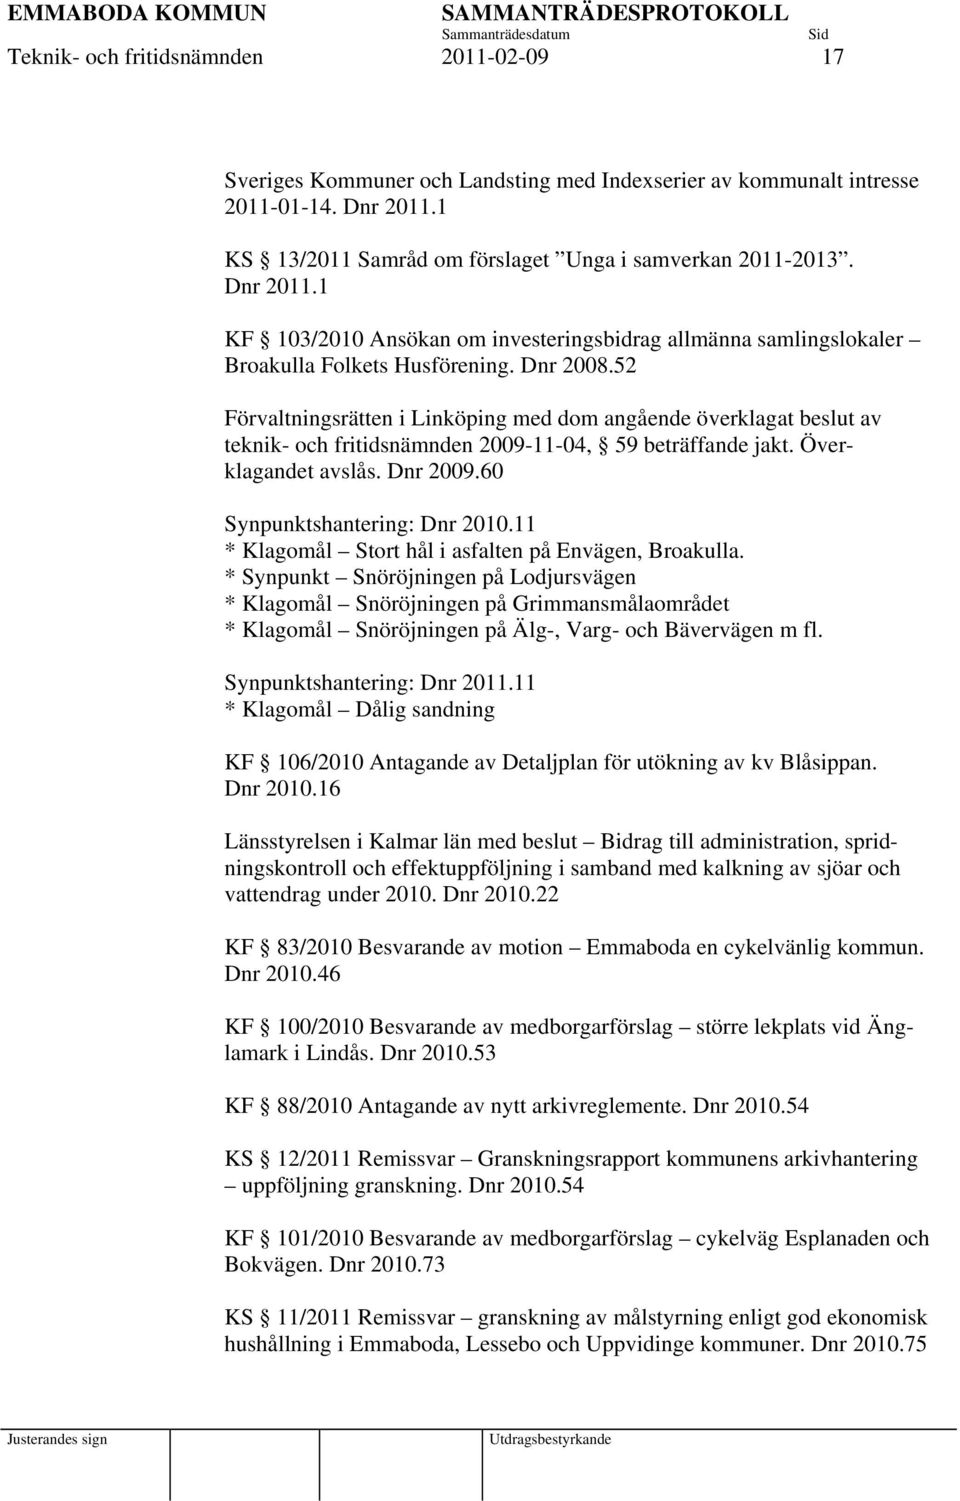 52 Förvaltningsrätten i Linköping med dom angående överklagat beslut av teknik- och fritidsnämnden 2009-11-04, 59 beträffande jakt. Överklagandet avslås. Dnr 2009.60 Synpunktshantering: Dnr 2010.